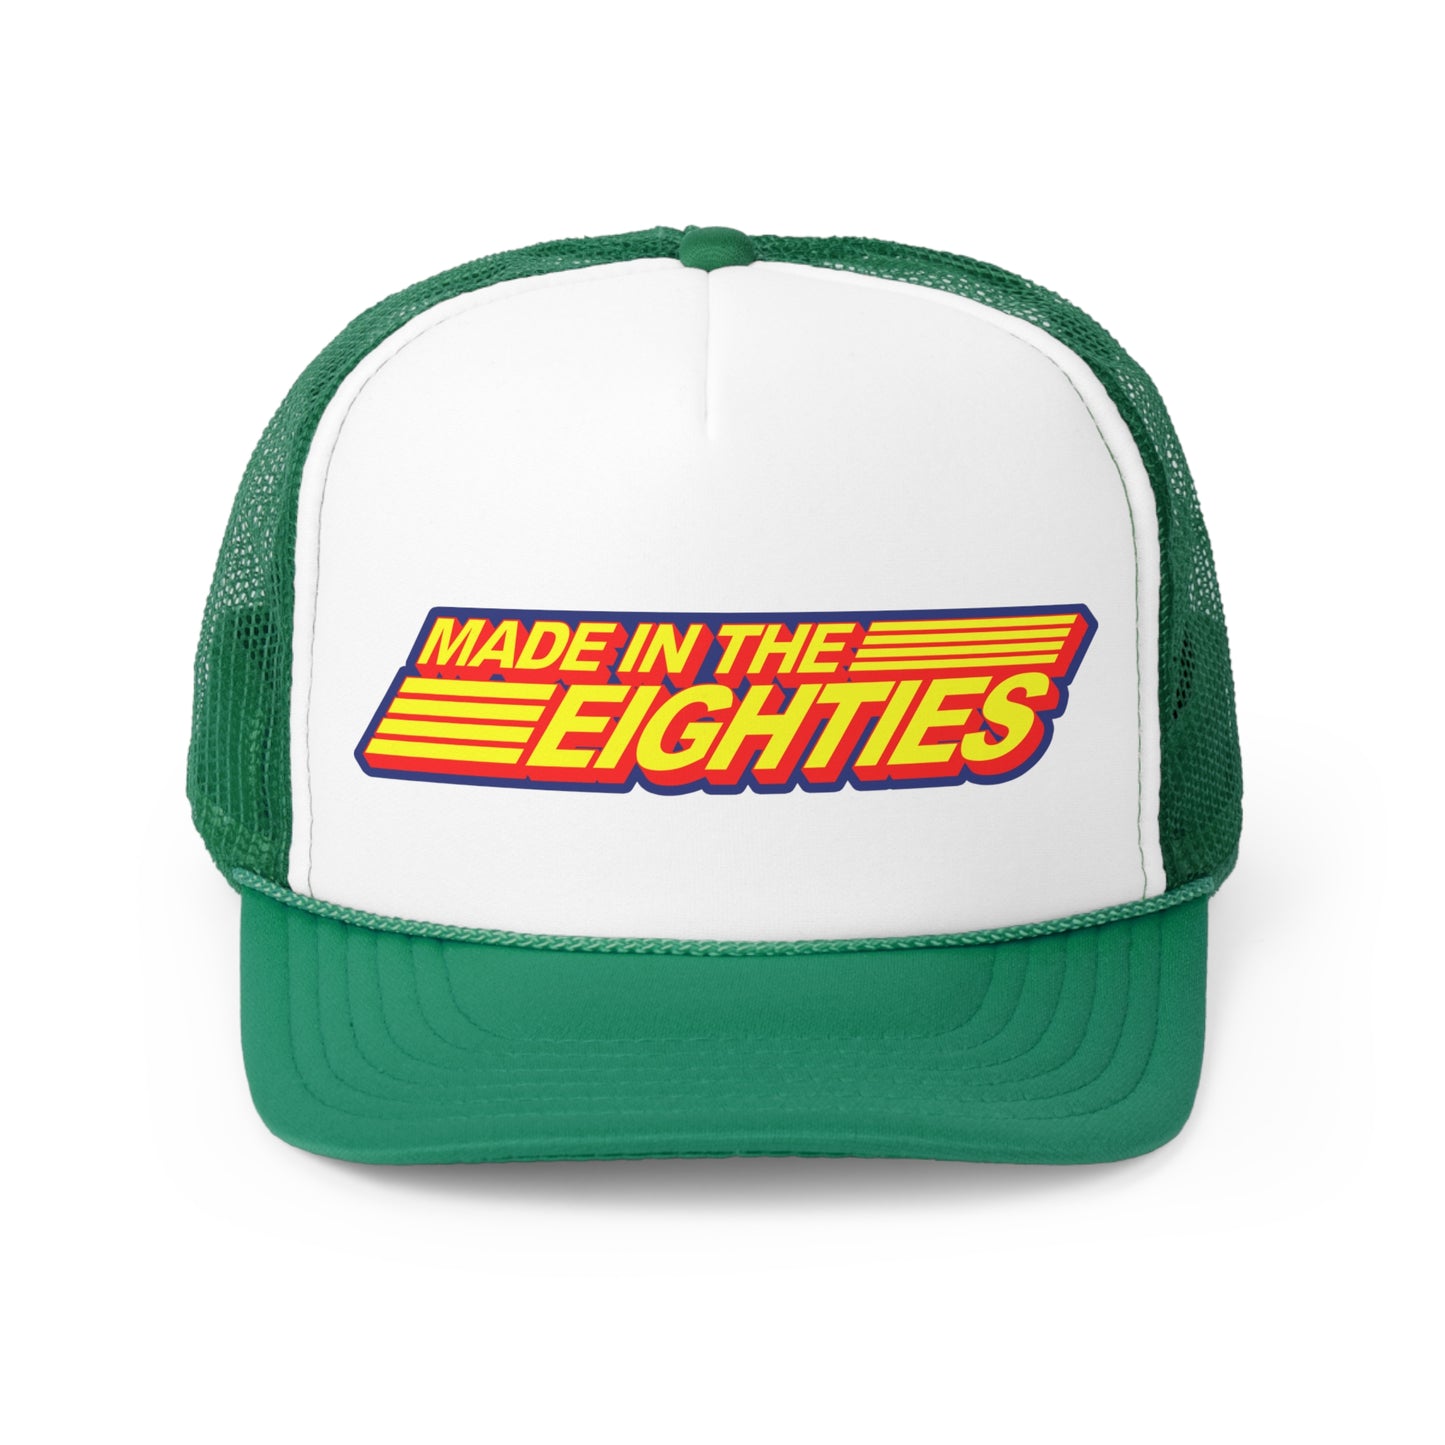 Made In the Eighties trucker hat